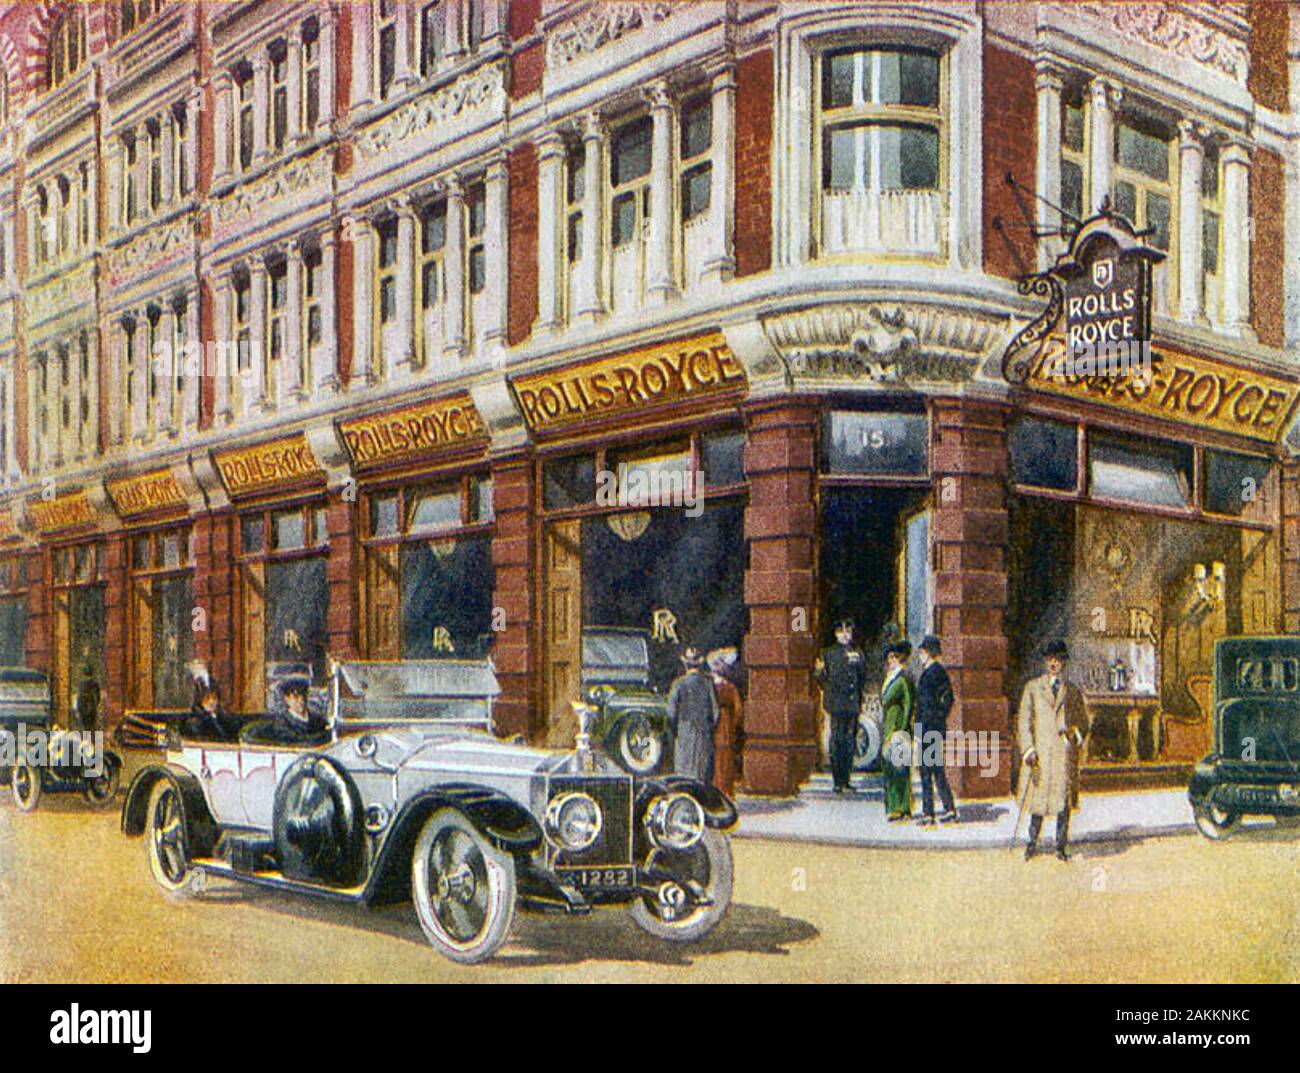 ROLLS-ROYCE d'exposition à 15 Conduit Street, Londres, vers 1915 Banque D'Images